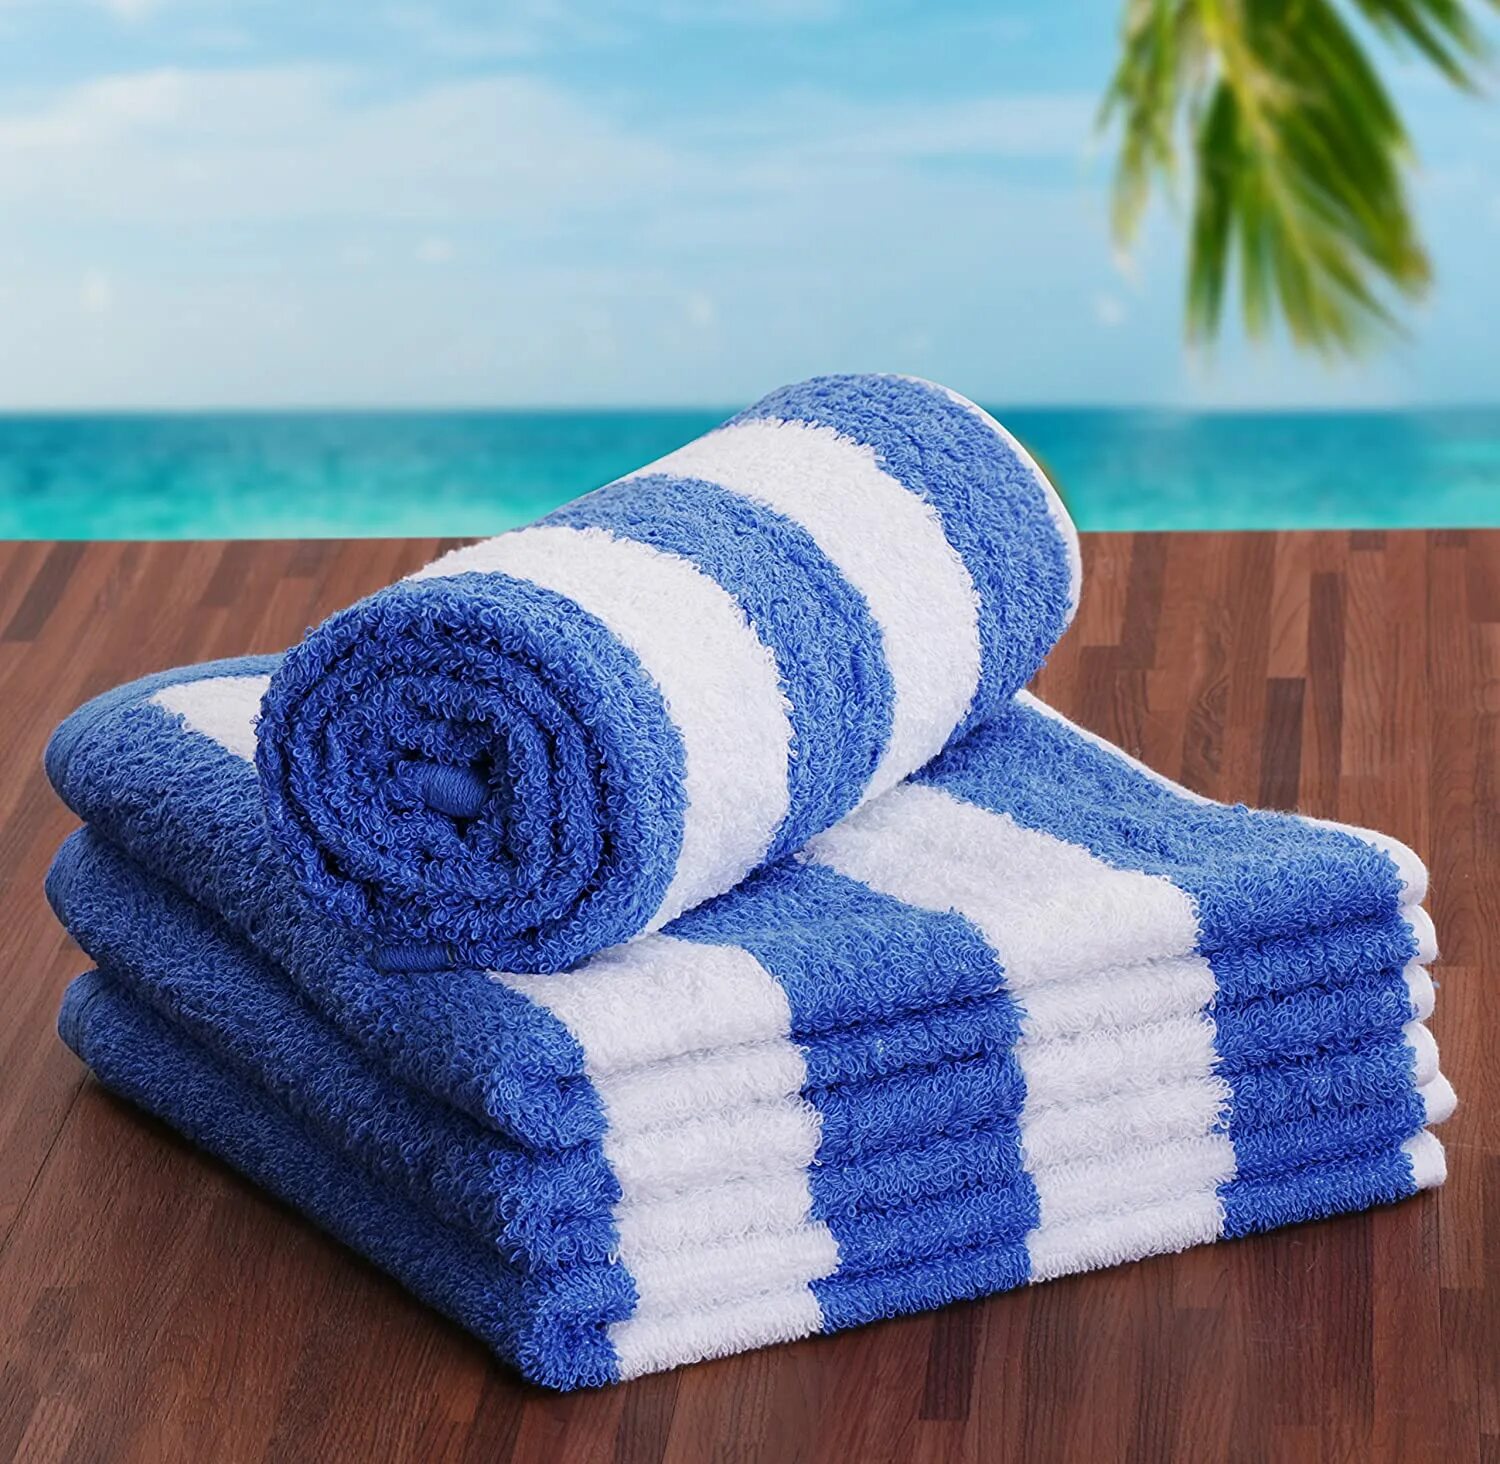 Полотенце для бассейна. Красивые полотенца. Полотенца большие. Огромное полотенце. Лучший материал полотенец